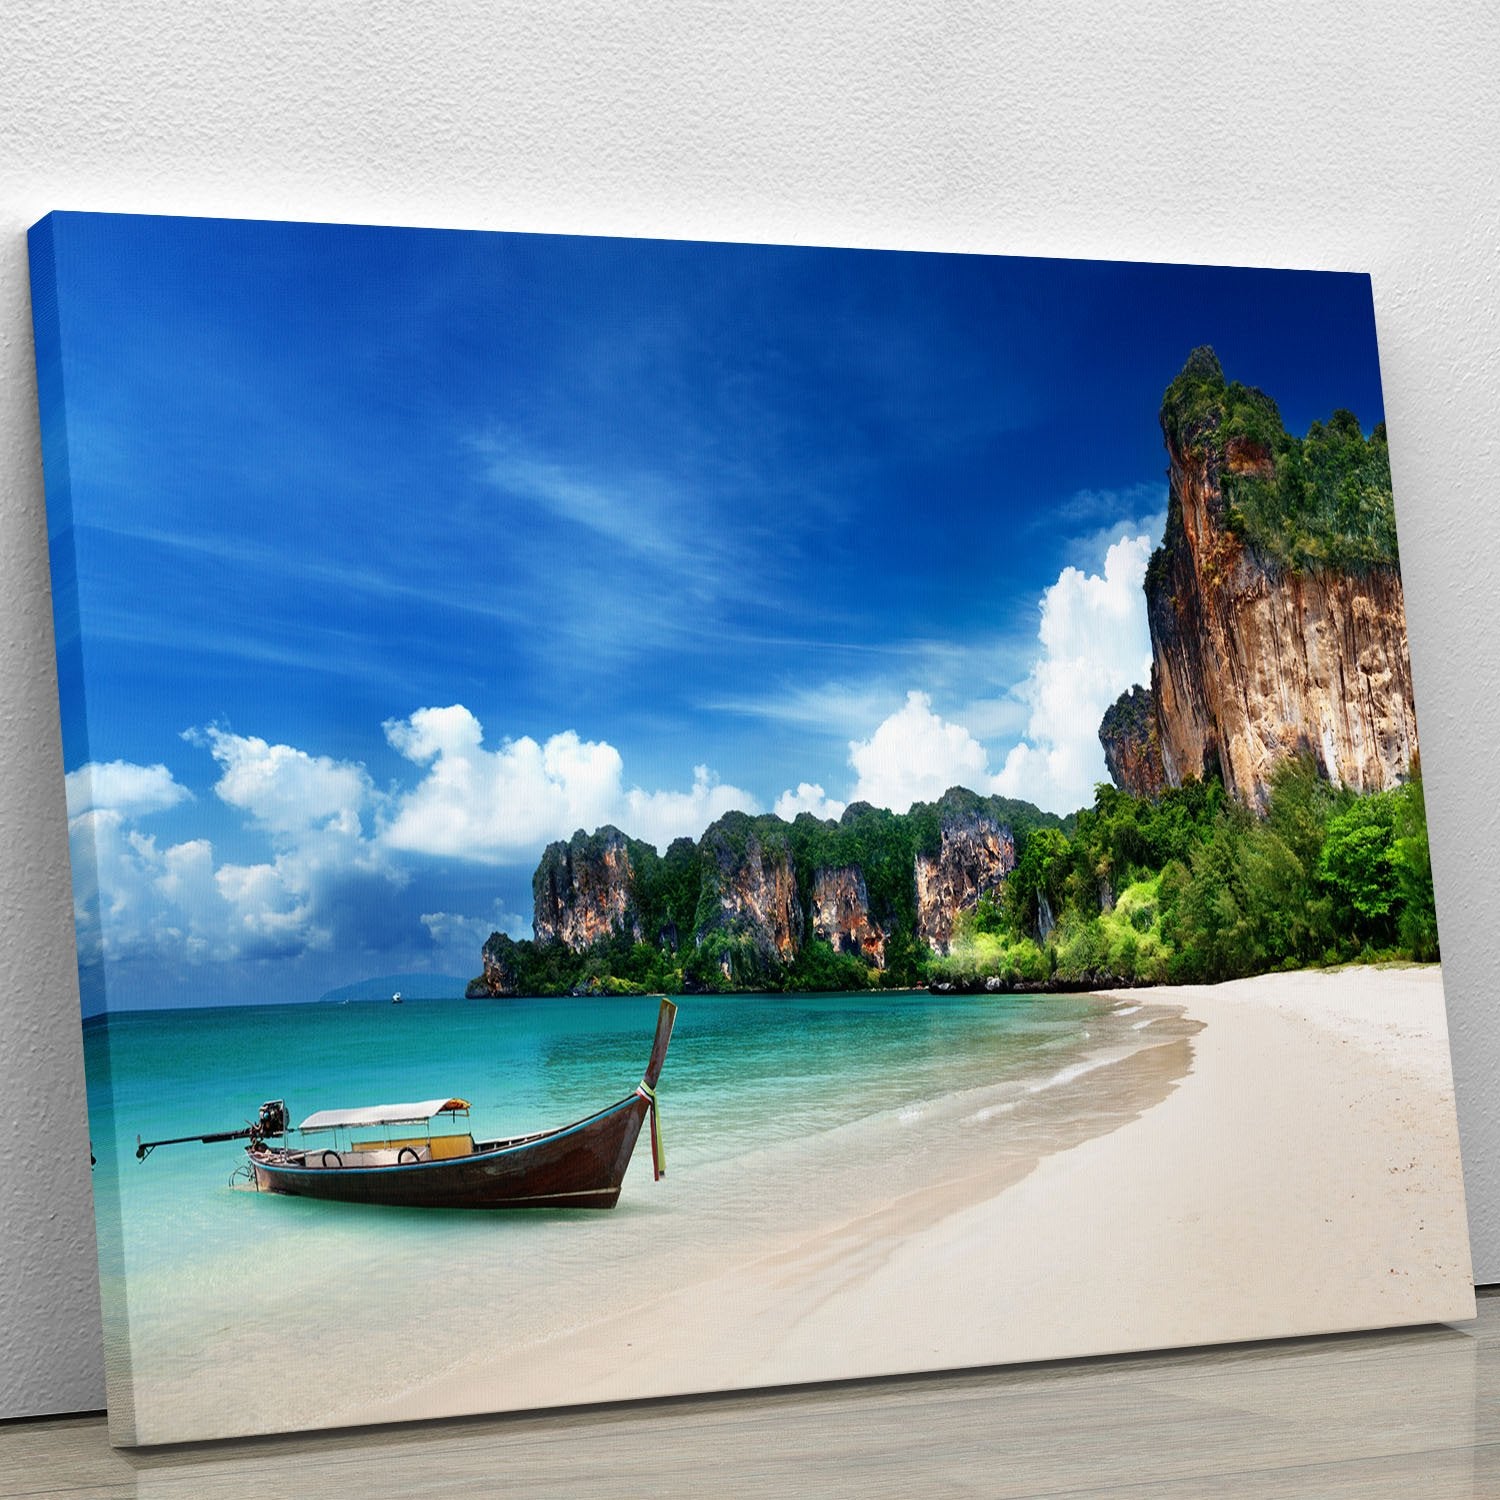 Railay beach in Krabi Thailand Canvas Print or Poster